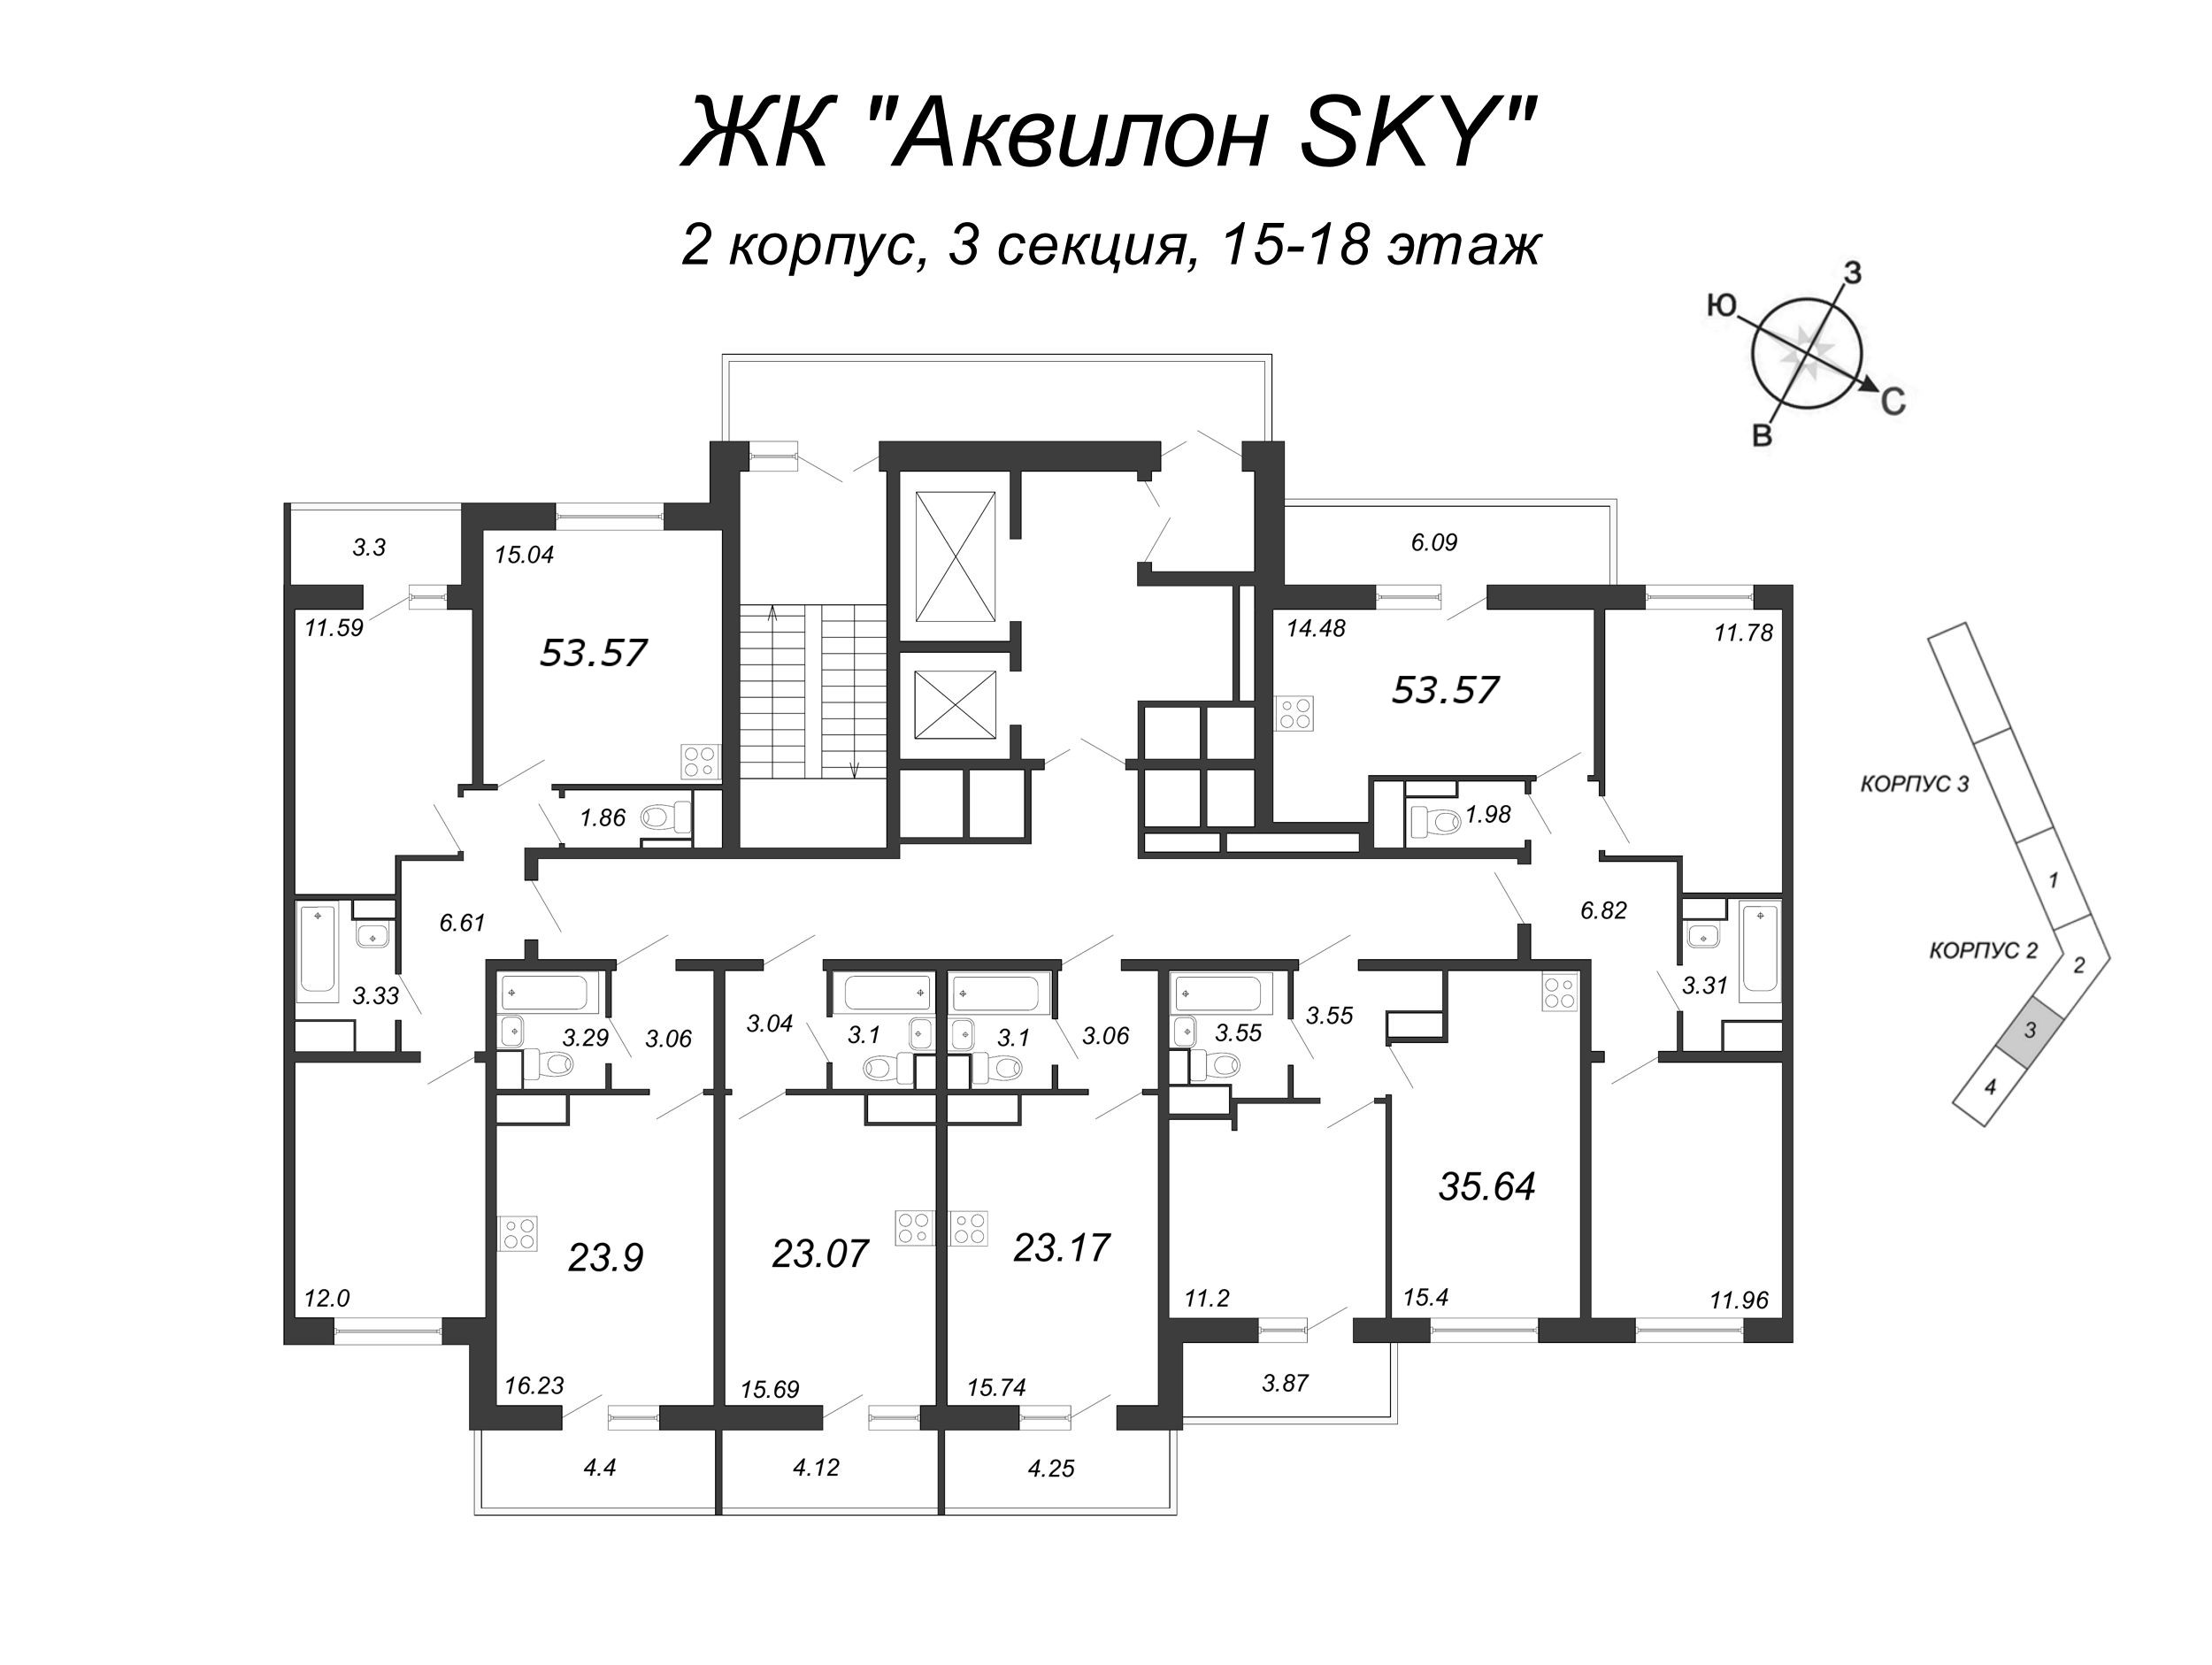 Квартира-студия, 23.9 м² в ЖК "Аквилон SKY" - планировка этажа